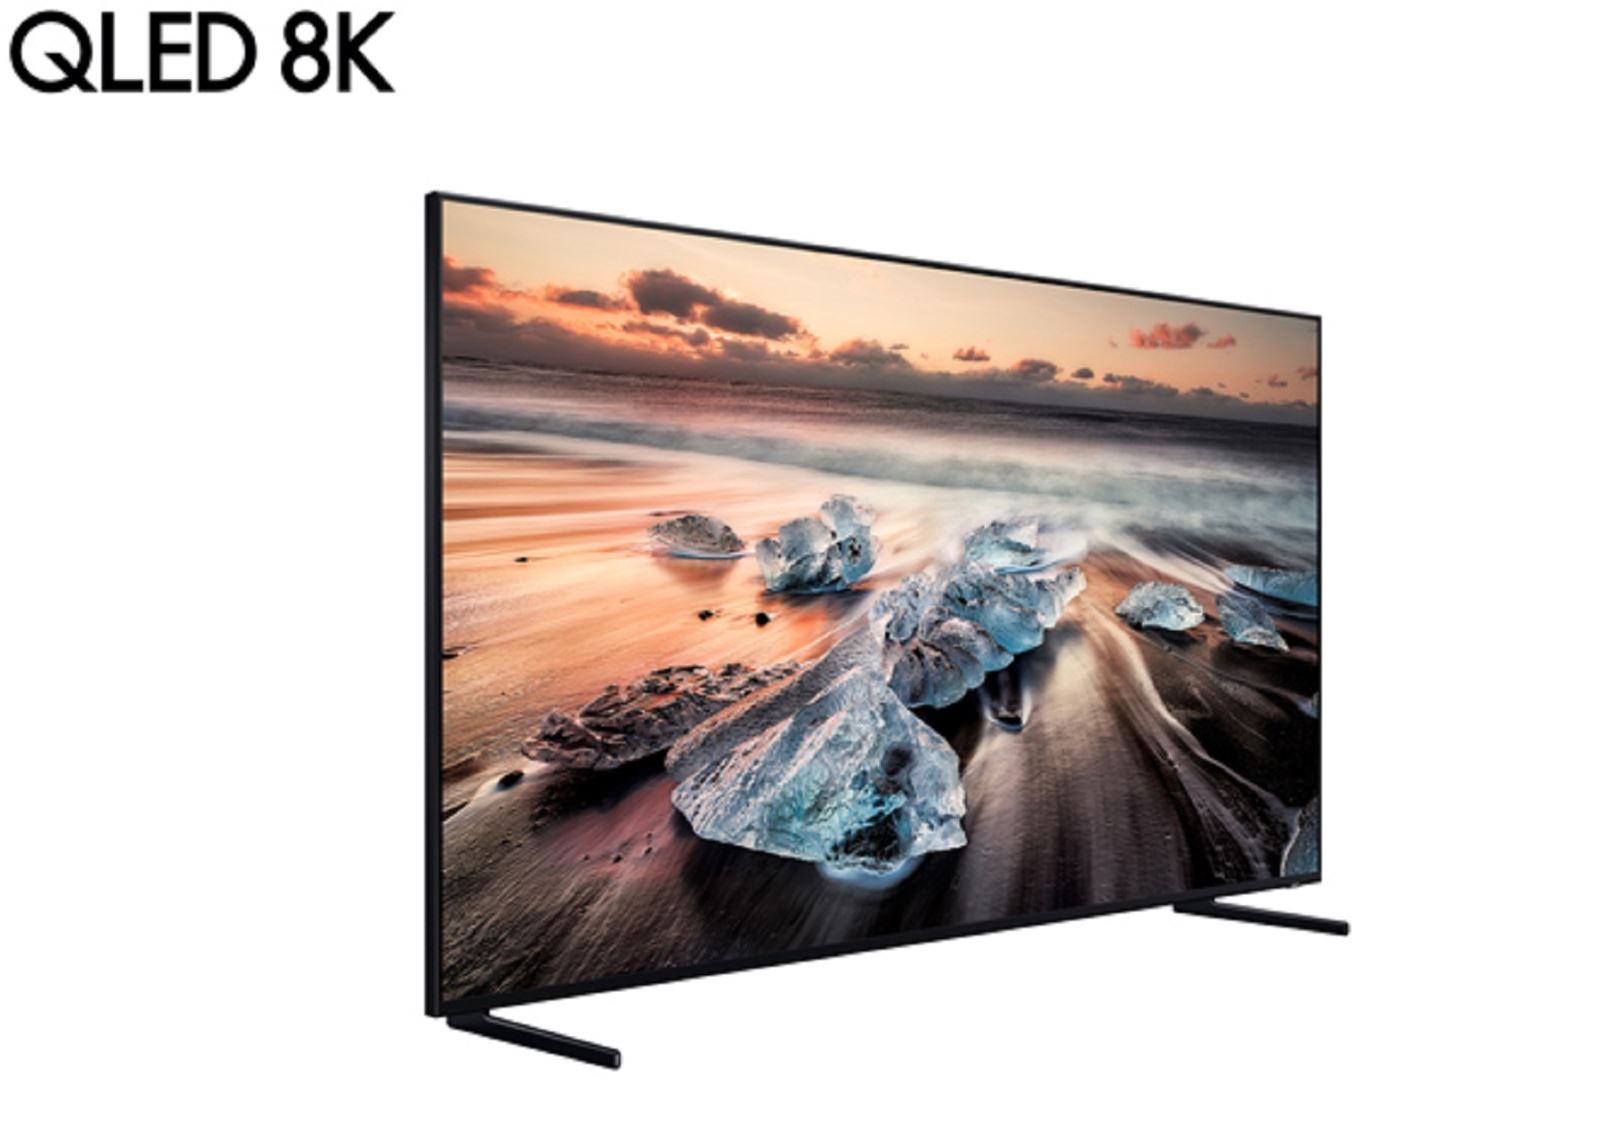 Samsung công bố TV QLED độ phân giải 8K đầu tiên tại triển lãm công nghệ IFA 2018